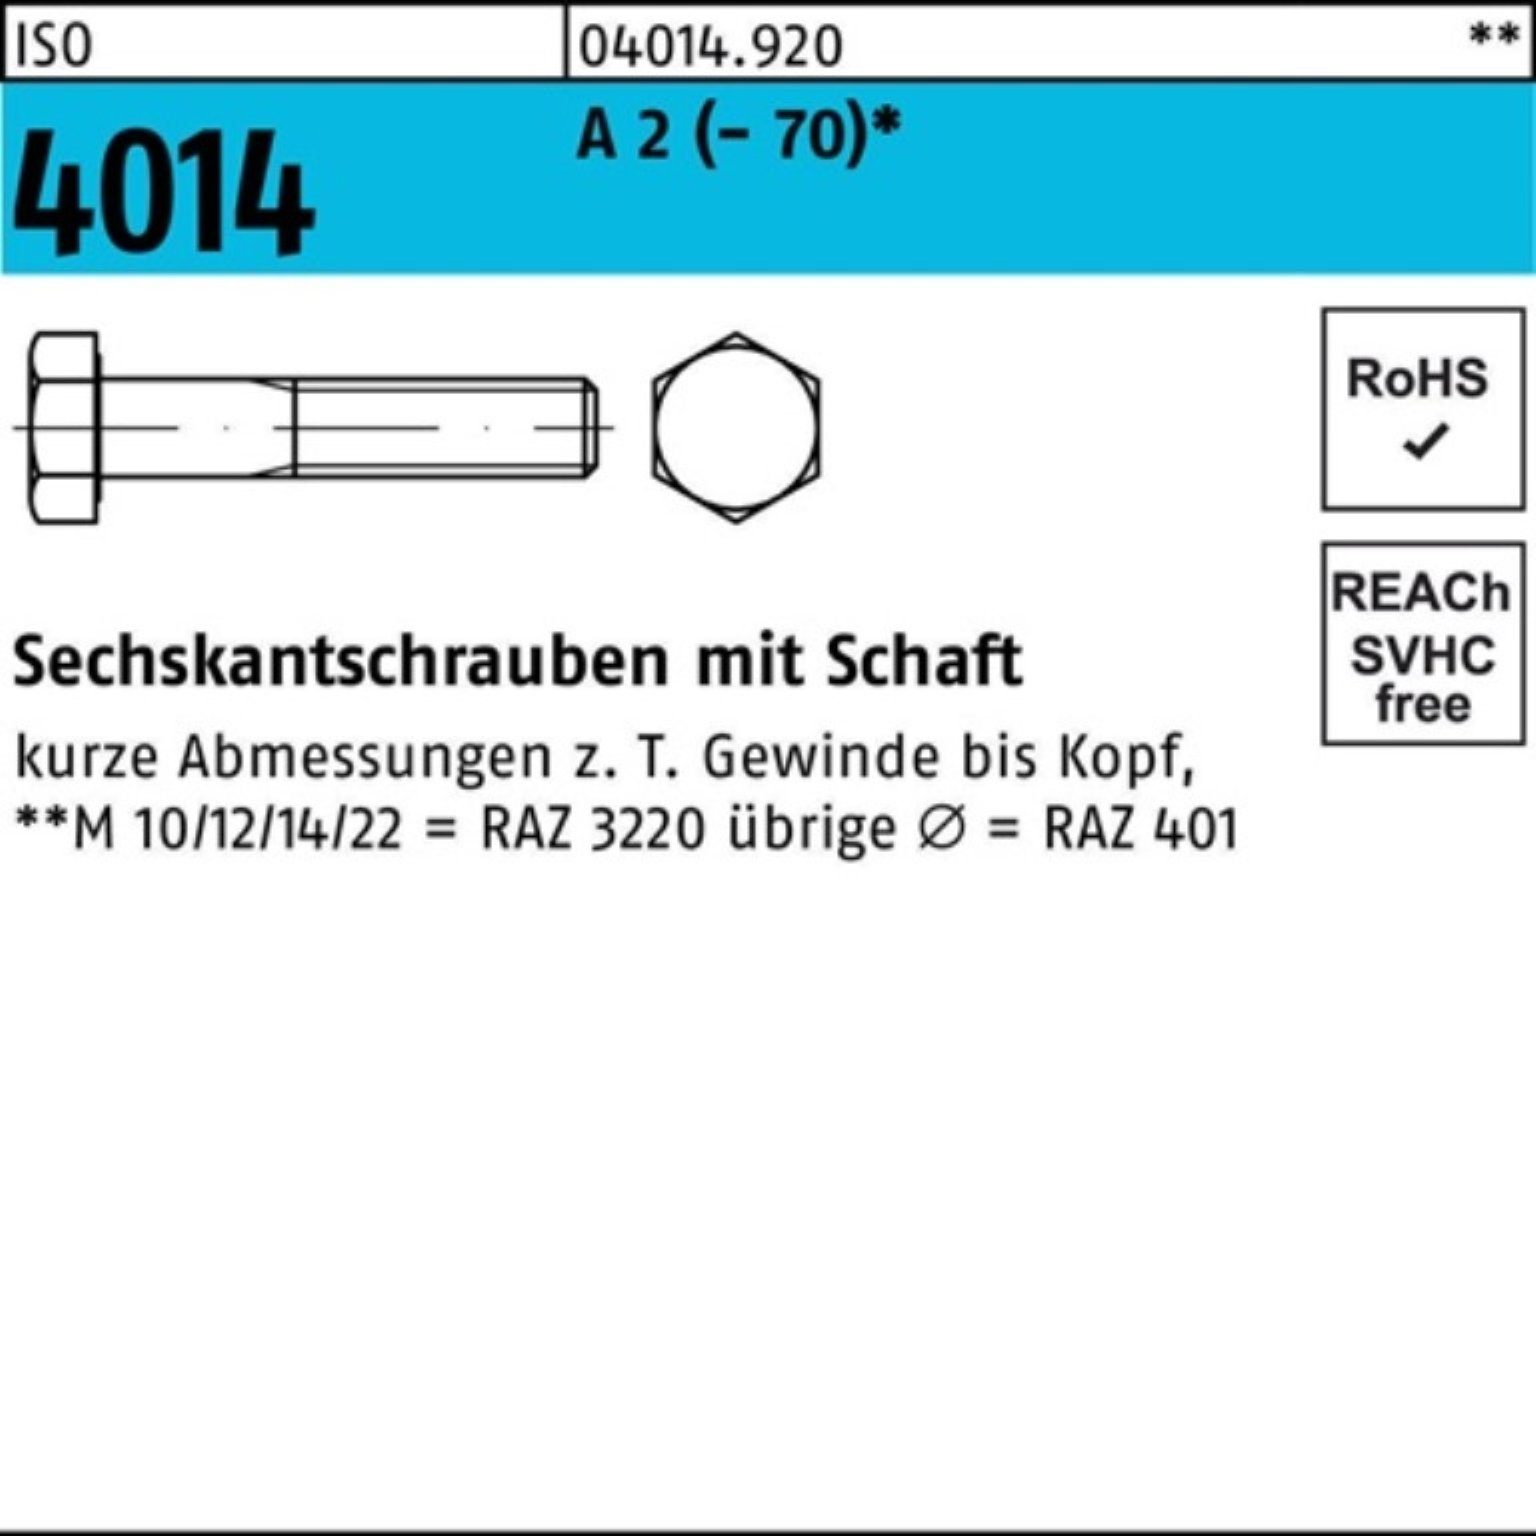 Bufab Sechskantschraube 100er Pack Sechskantschraube ISO 4014 Schaft M12x 120 A 2 (70) 25 St